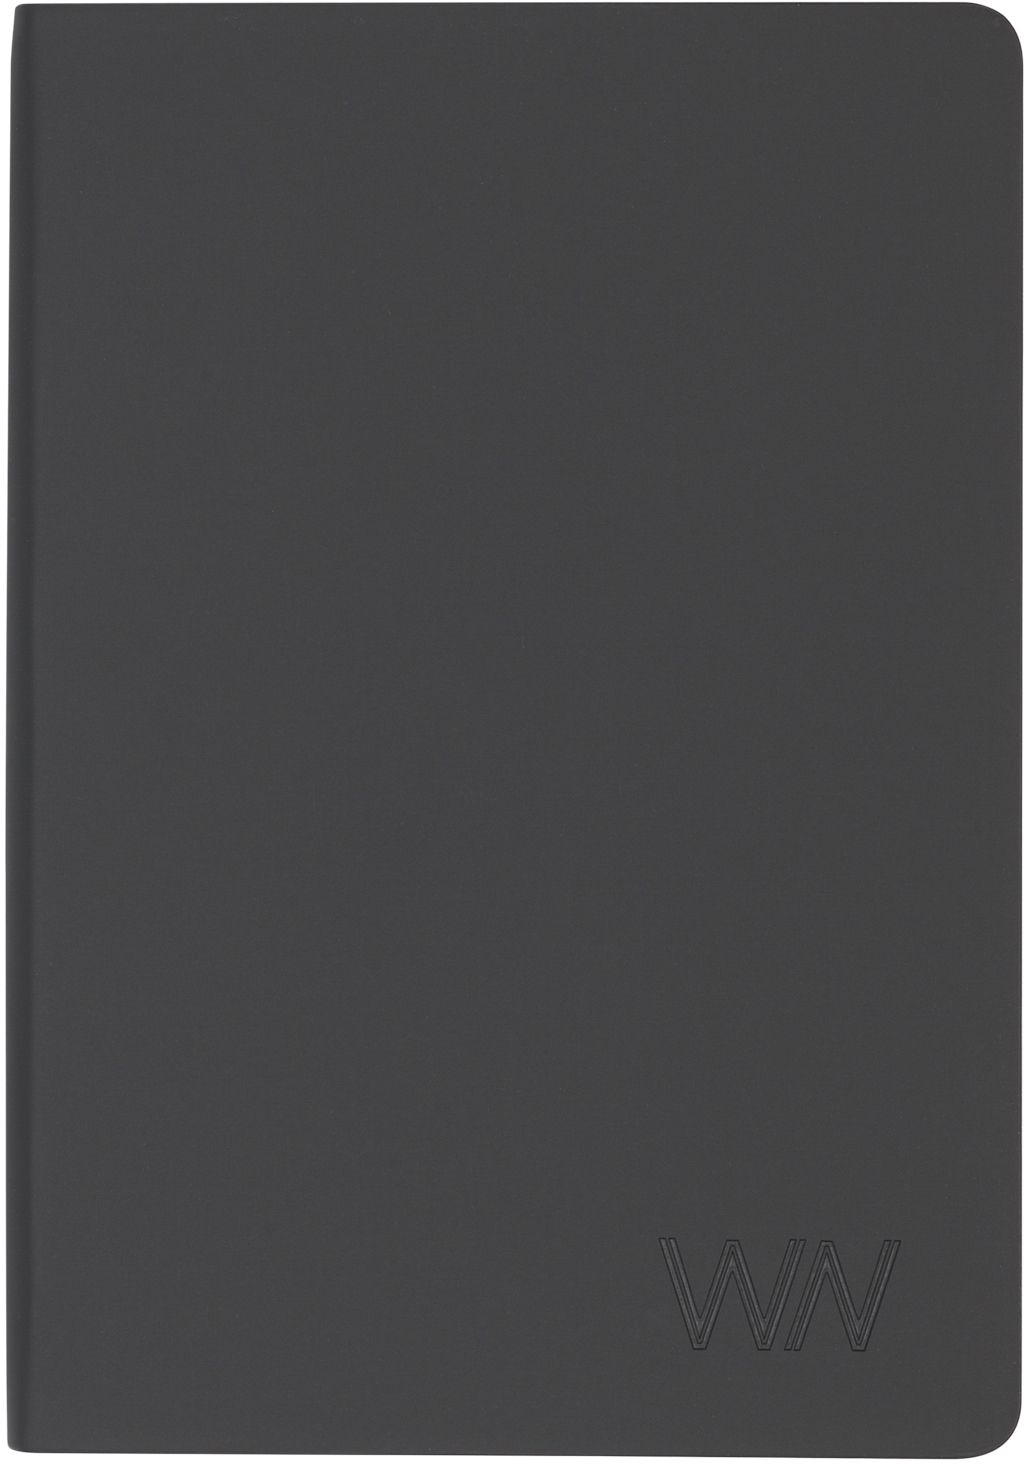 Артикул: E3814-3_T — Ежедневник недатированный "Болонья", гибкая обложка с тиснением, покрытие soft touch, формат А5